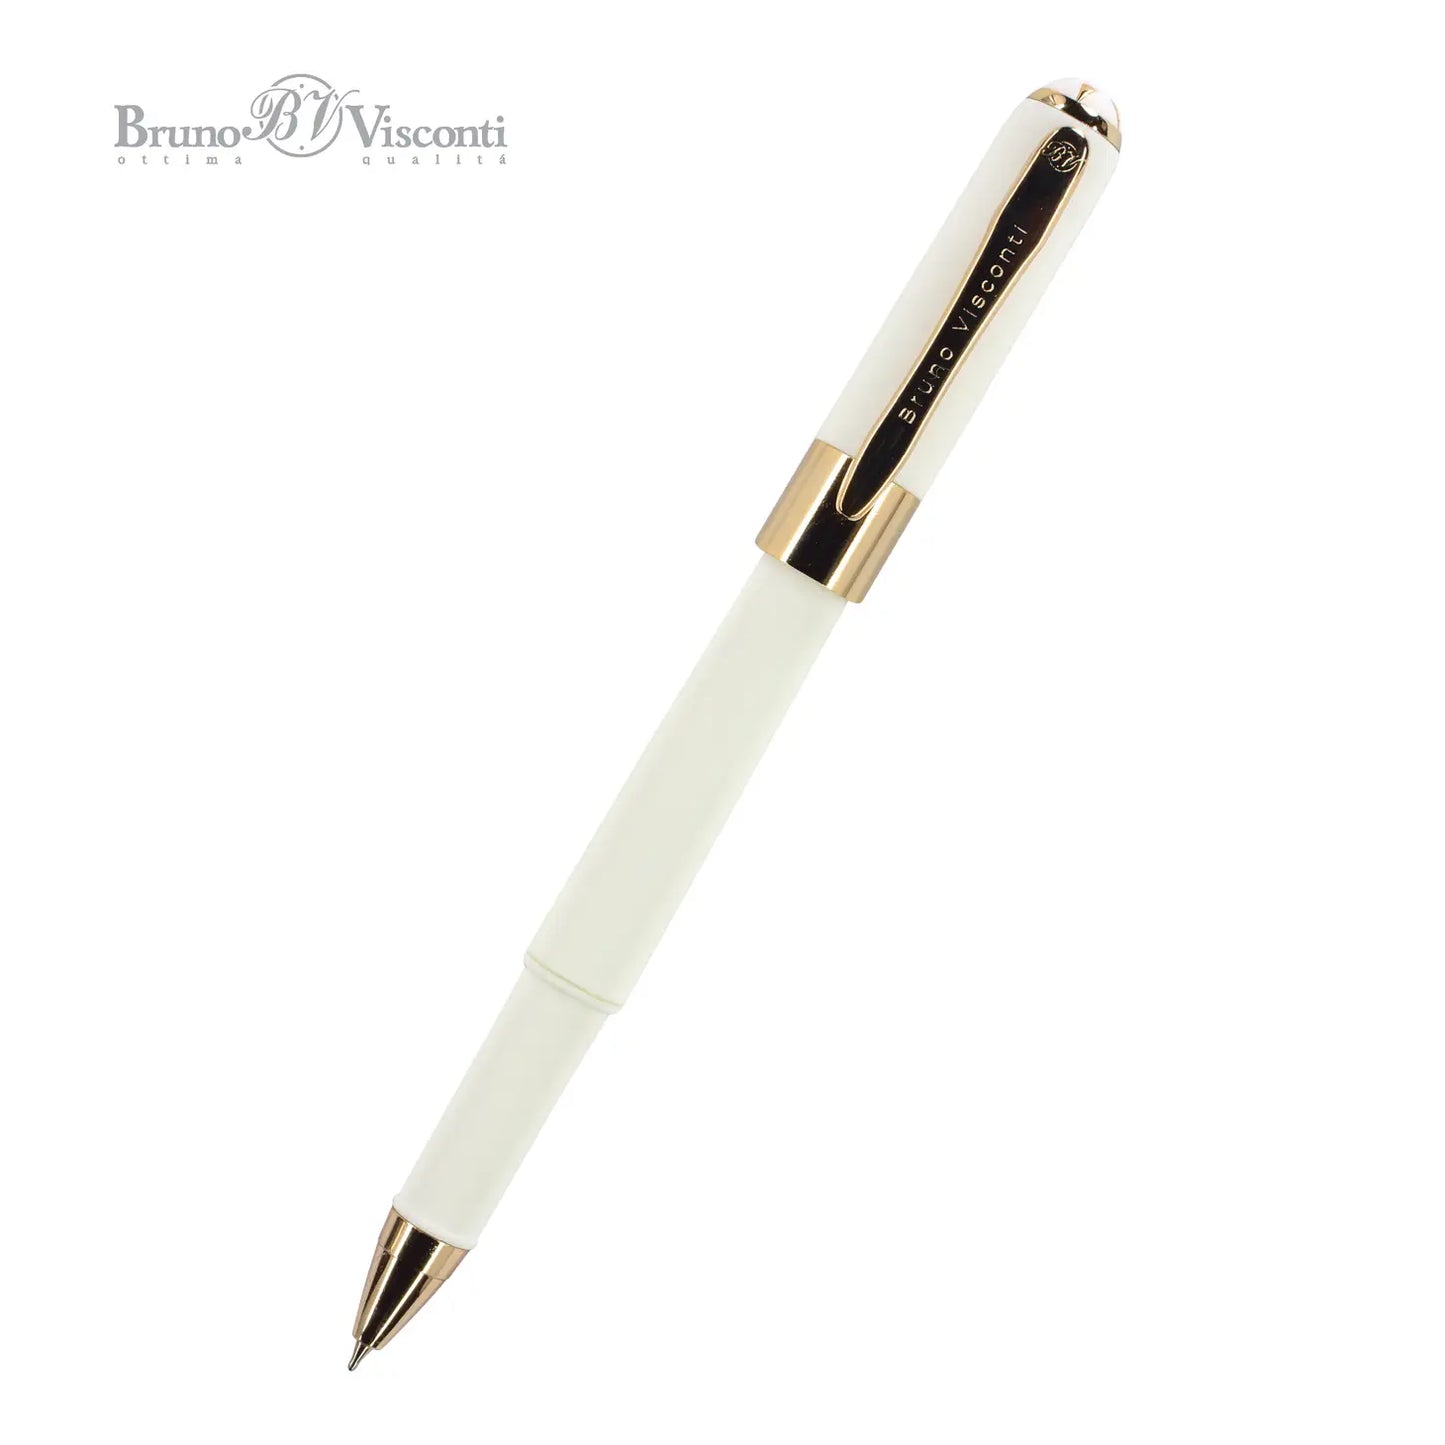 Monaco - White Pen